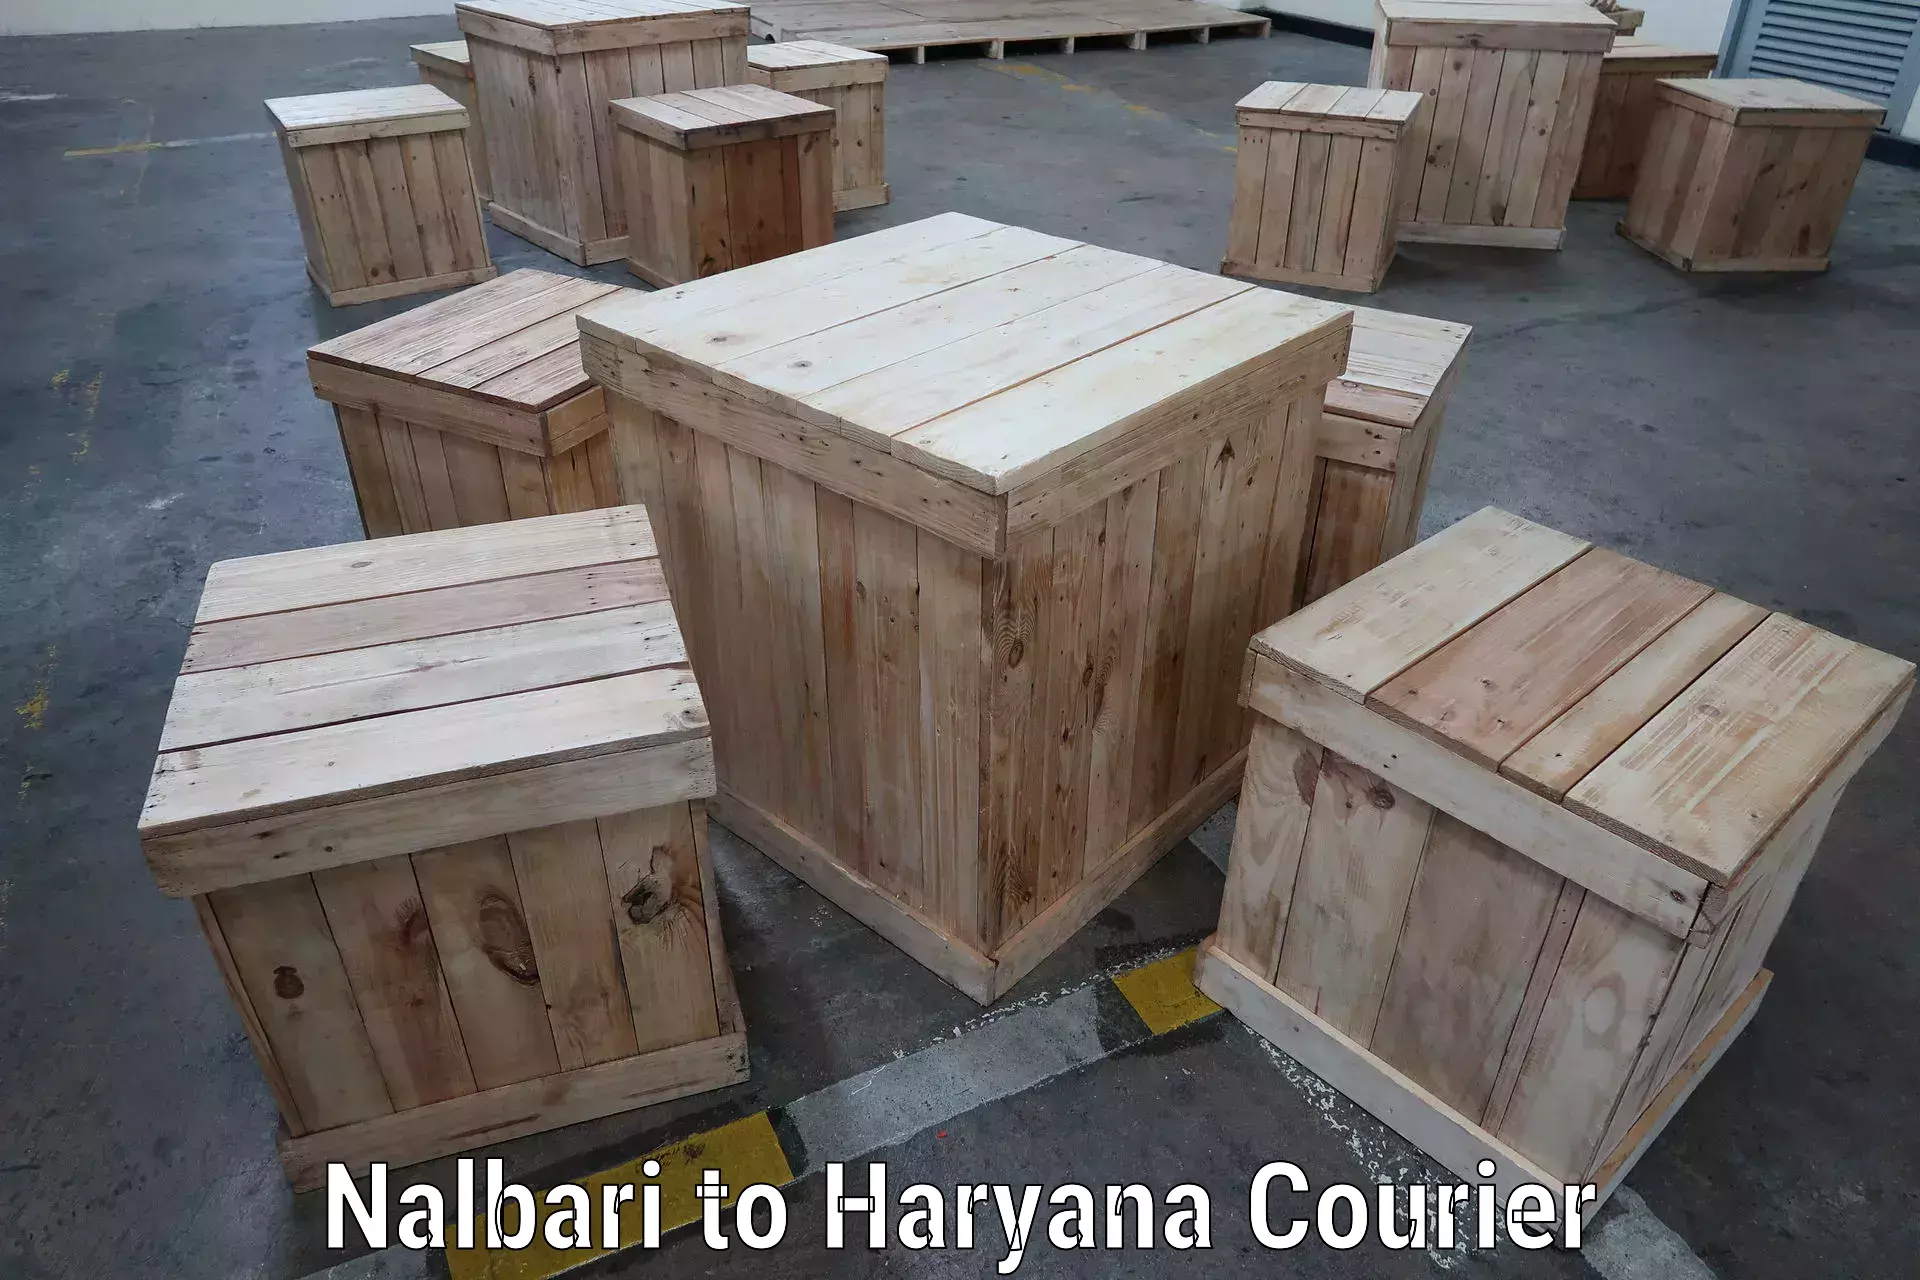 Ocean freight courier Nalbari to Haryana